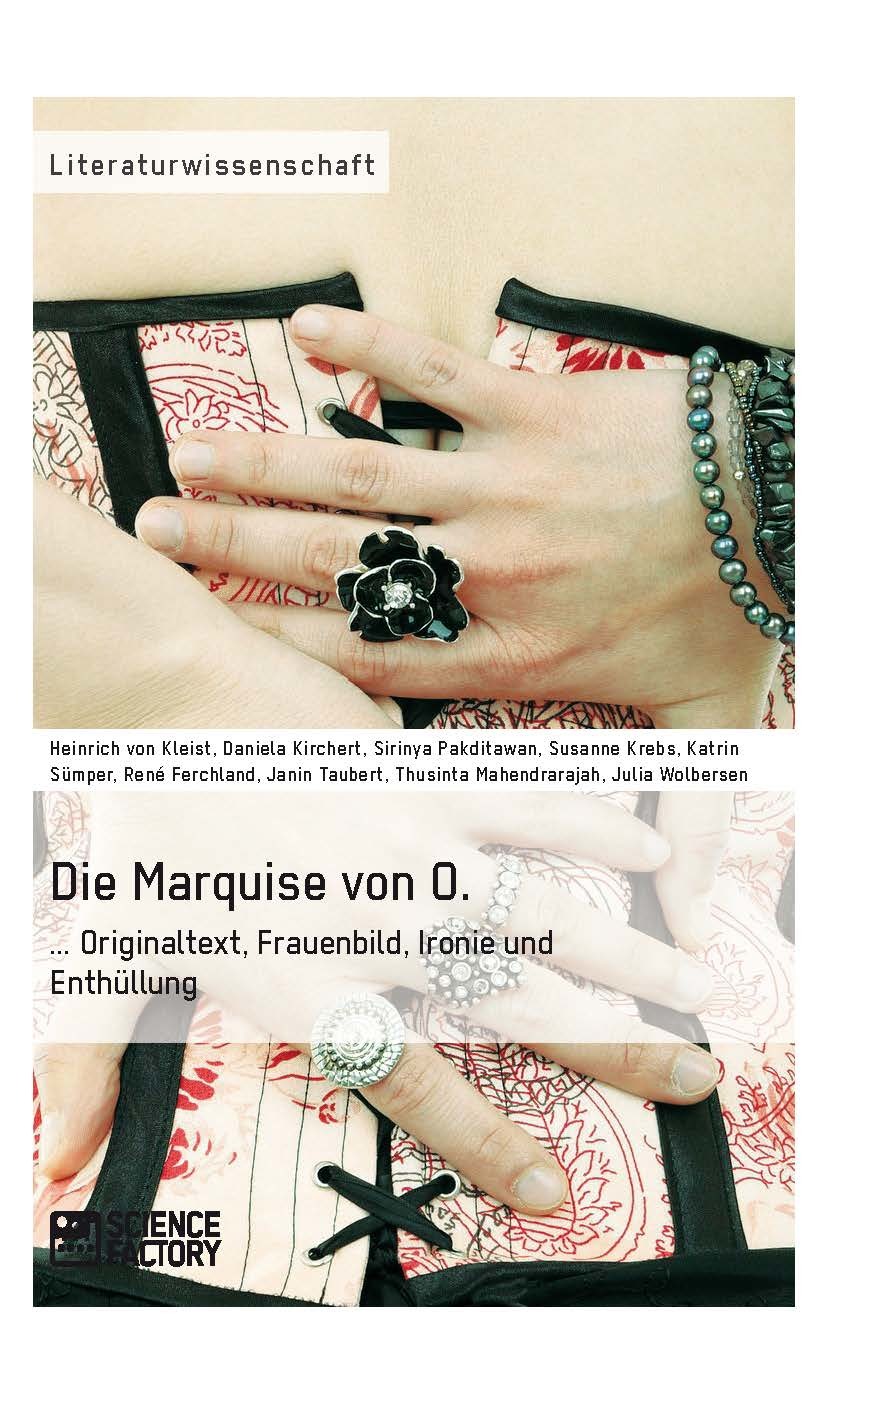 Título: Die Marquise von O. Originaltext, Frauenbild, Ironie und Enthüllung